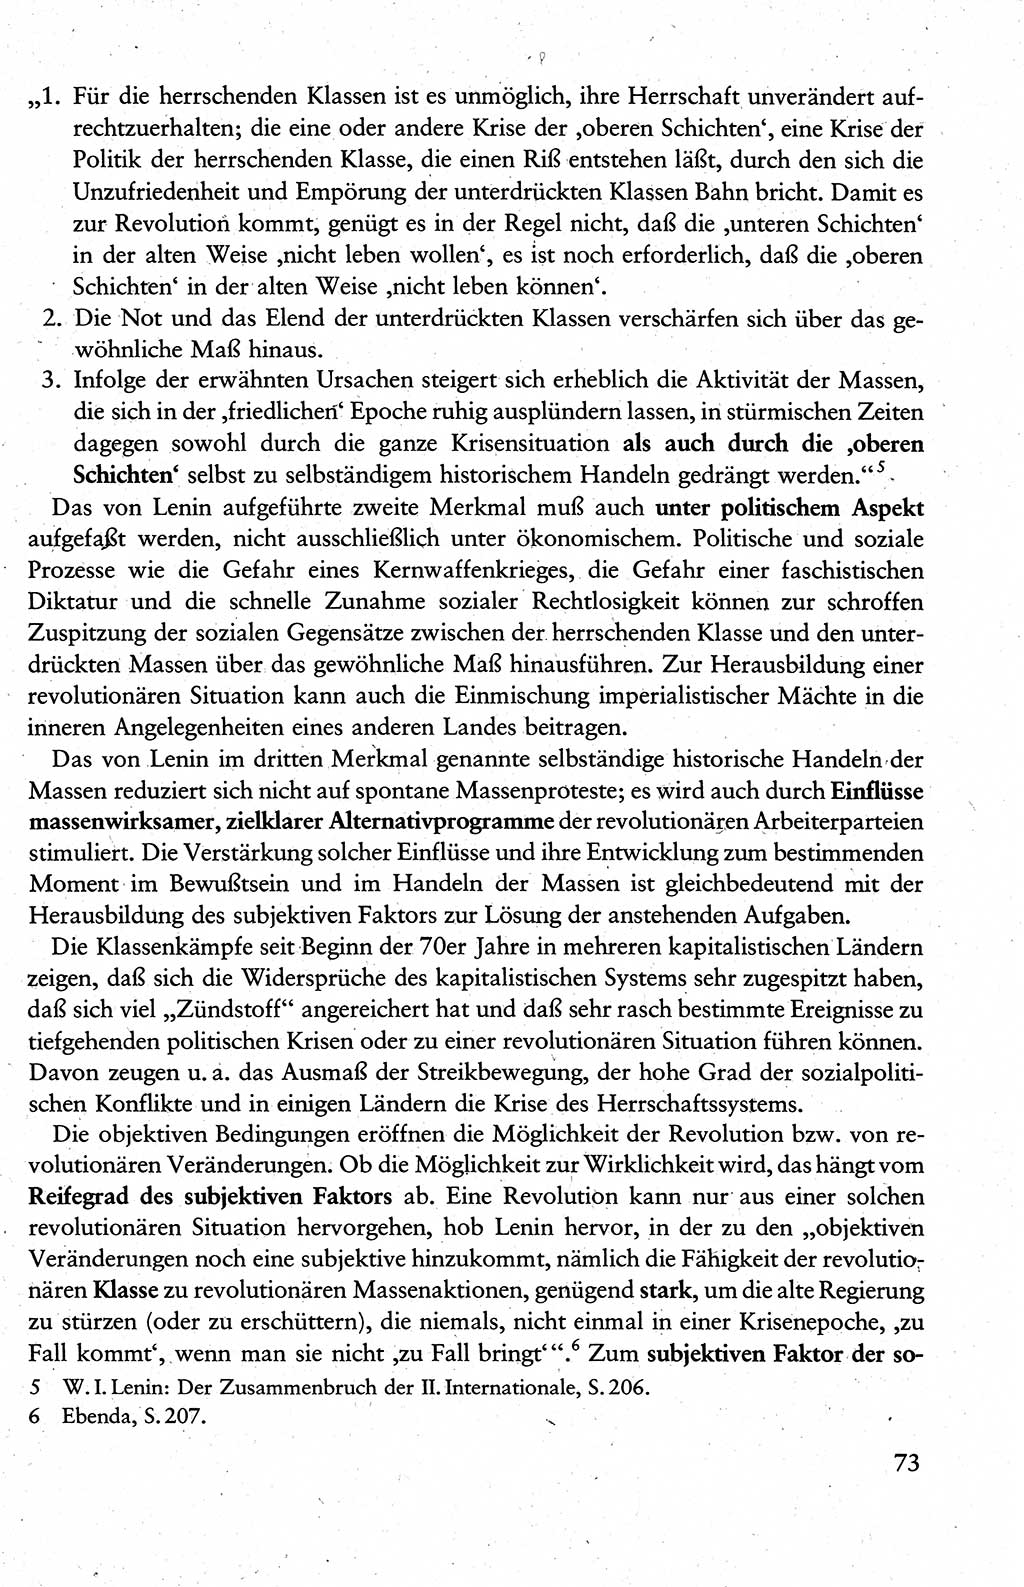 Wissenschaftlicher Kommunismus [Deutsche Demokratische Republik (DDR)], Lehrbuch für das marxistisch-leninistische Grundlagenstudium 1983, Seite 73 (Wiss. Komm. DDR Lb. 1983, S. 73)